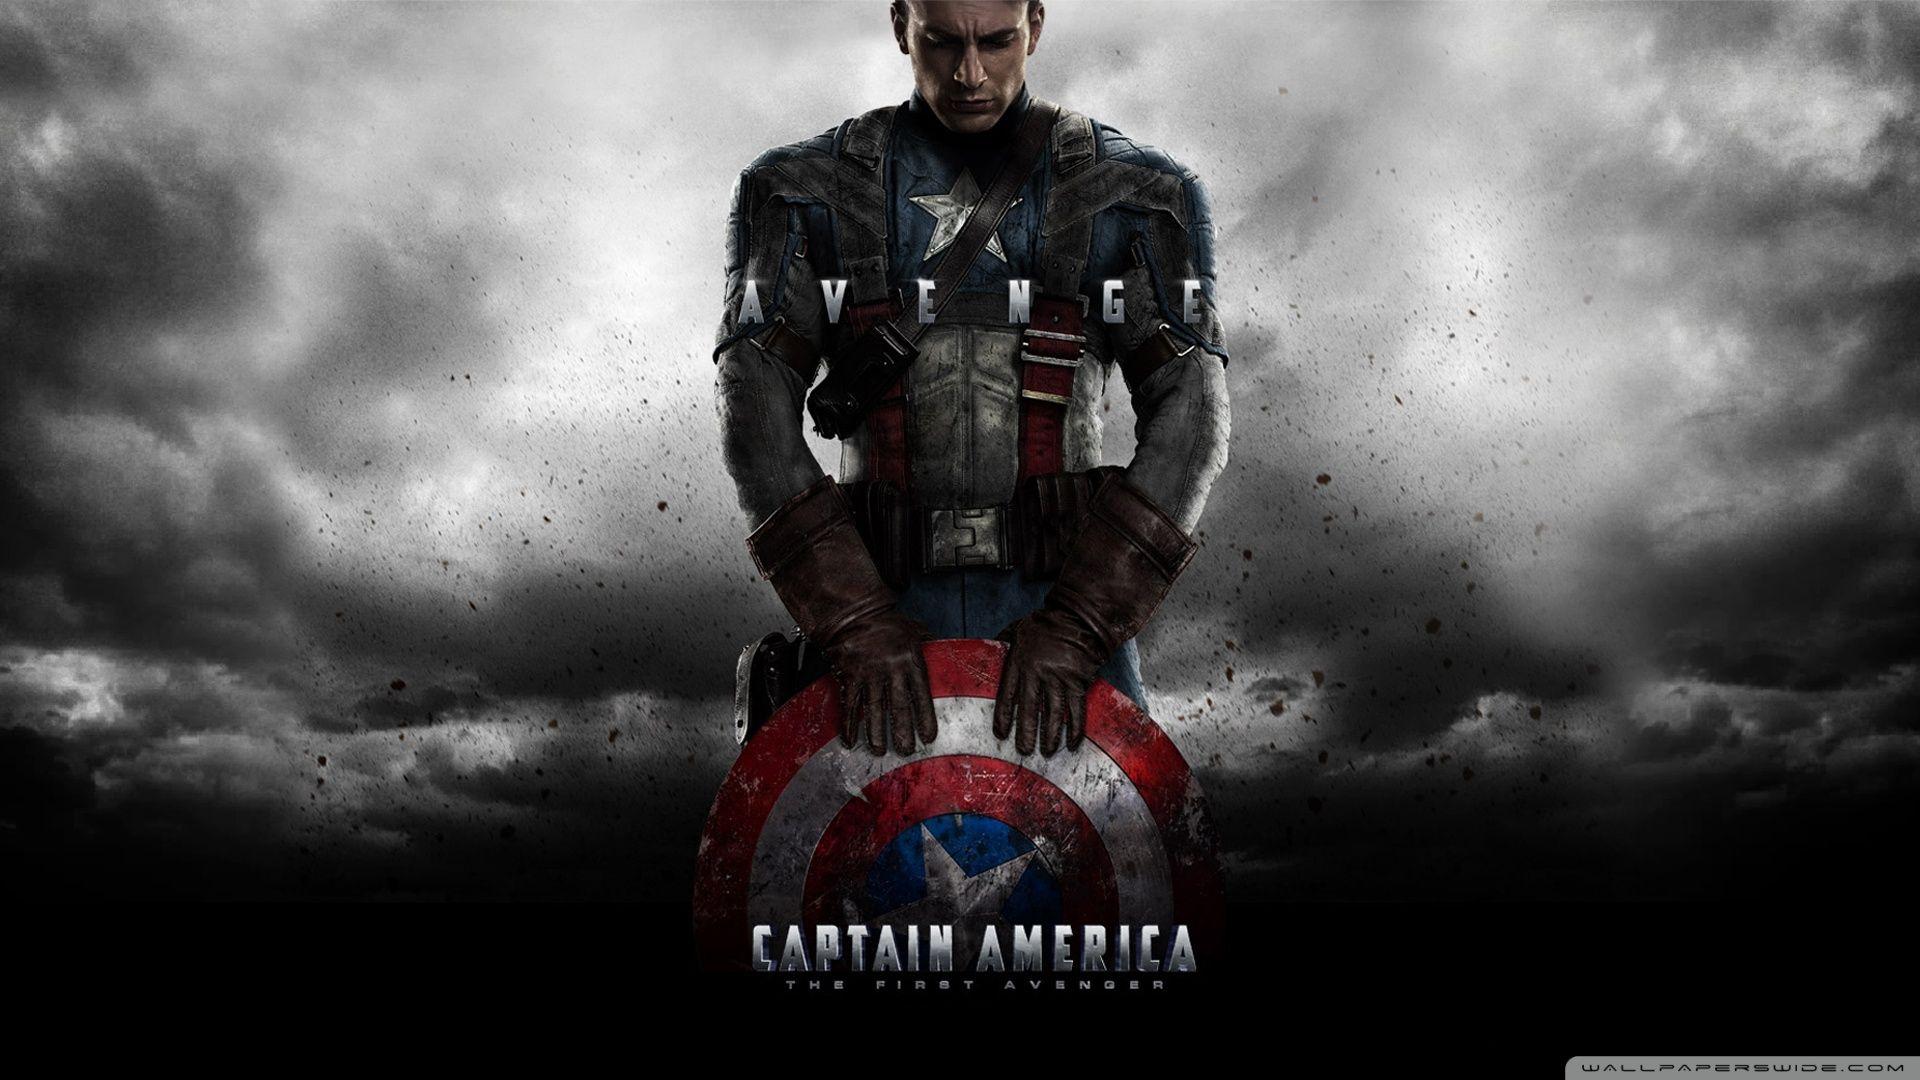 Captain America The First Avenger ❤ K 2K Desk 4K Wallpapers for K